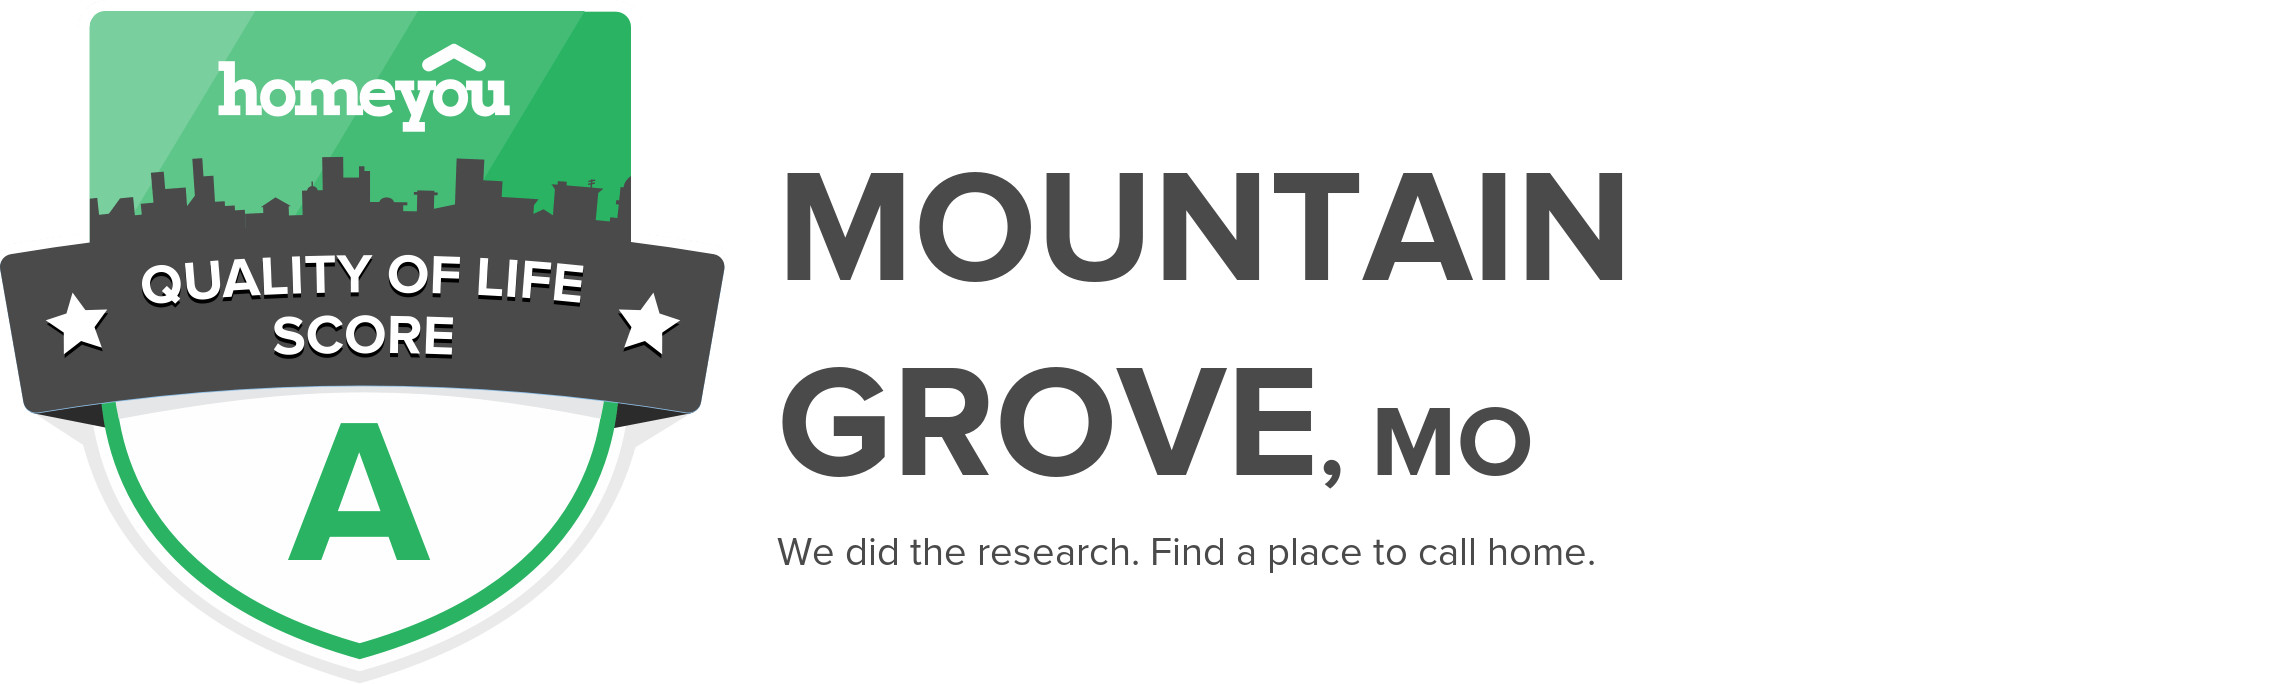 Mountain Grove, MO